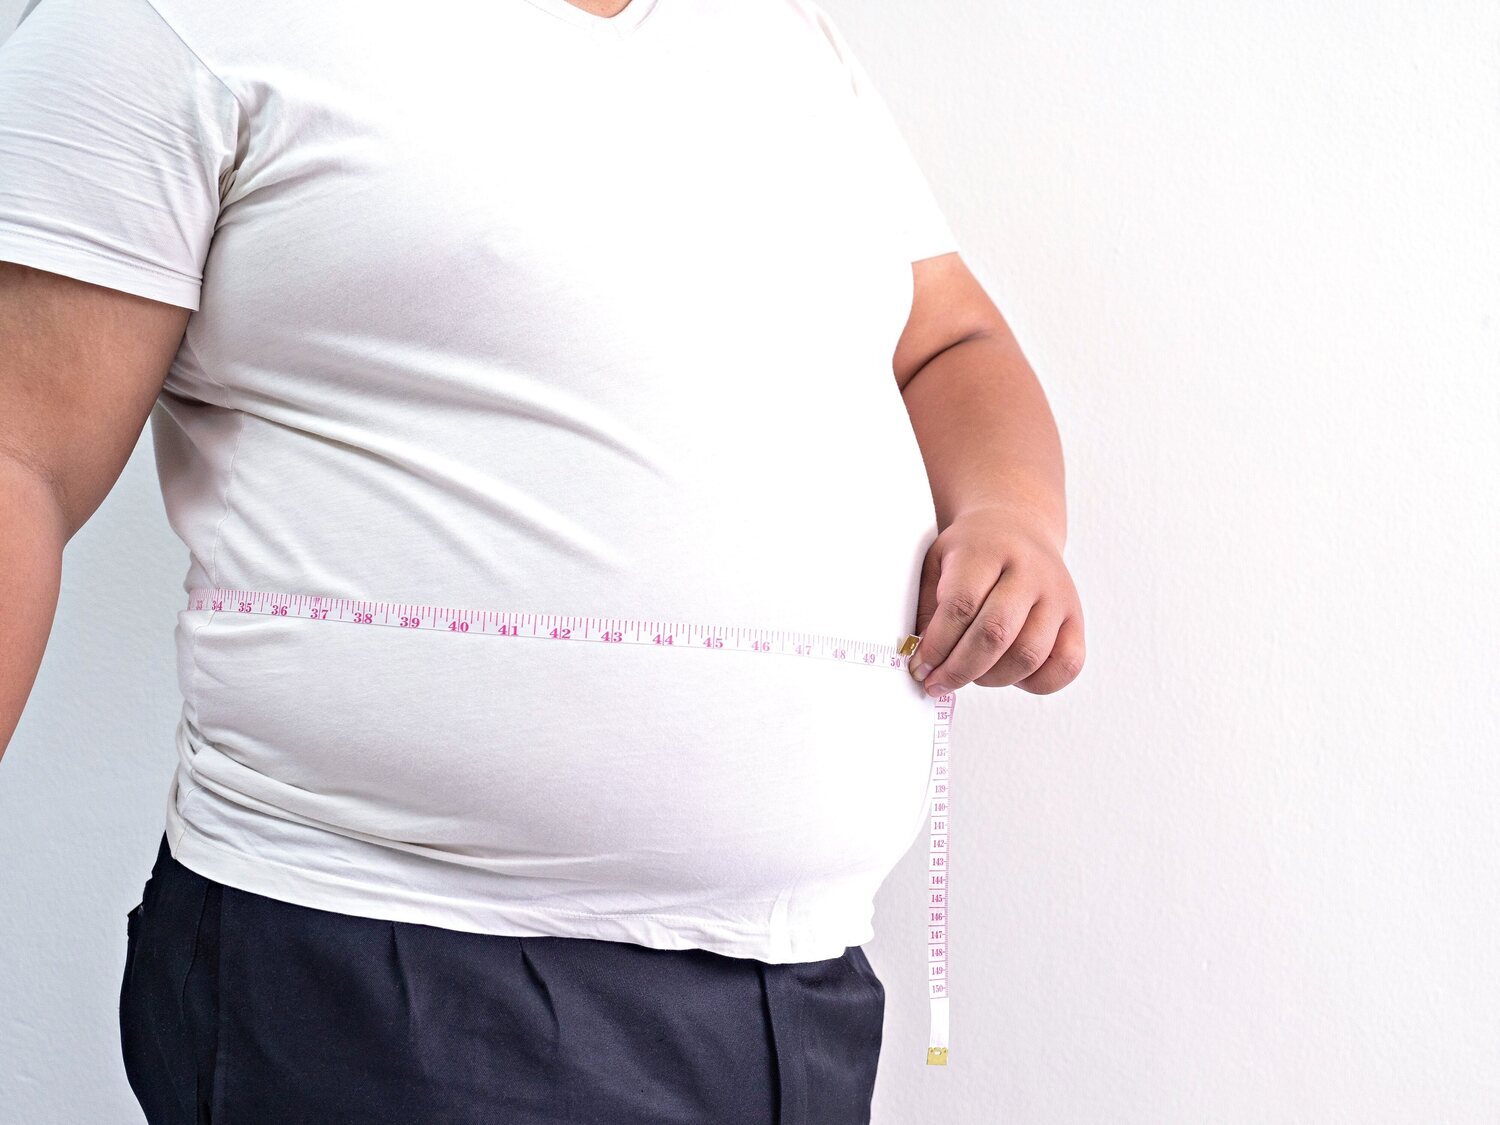 Los consejos de una enfermera para adelgazar hasta 100 kilos y mantener el peso